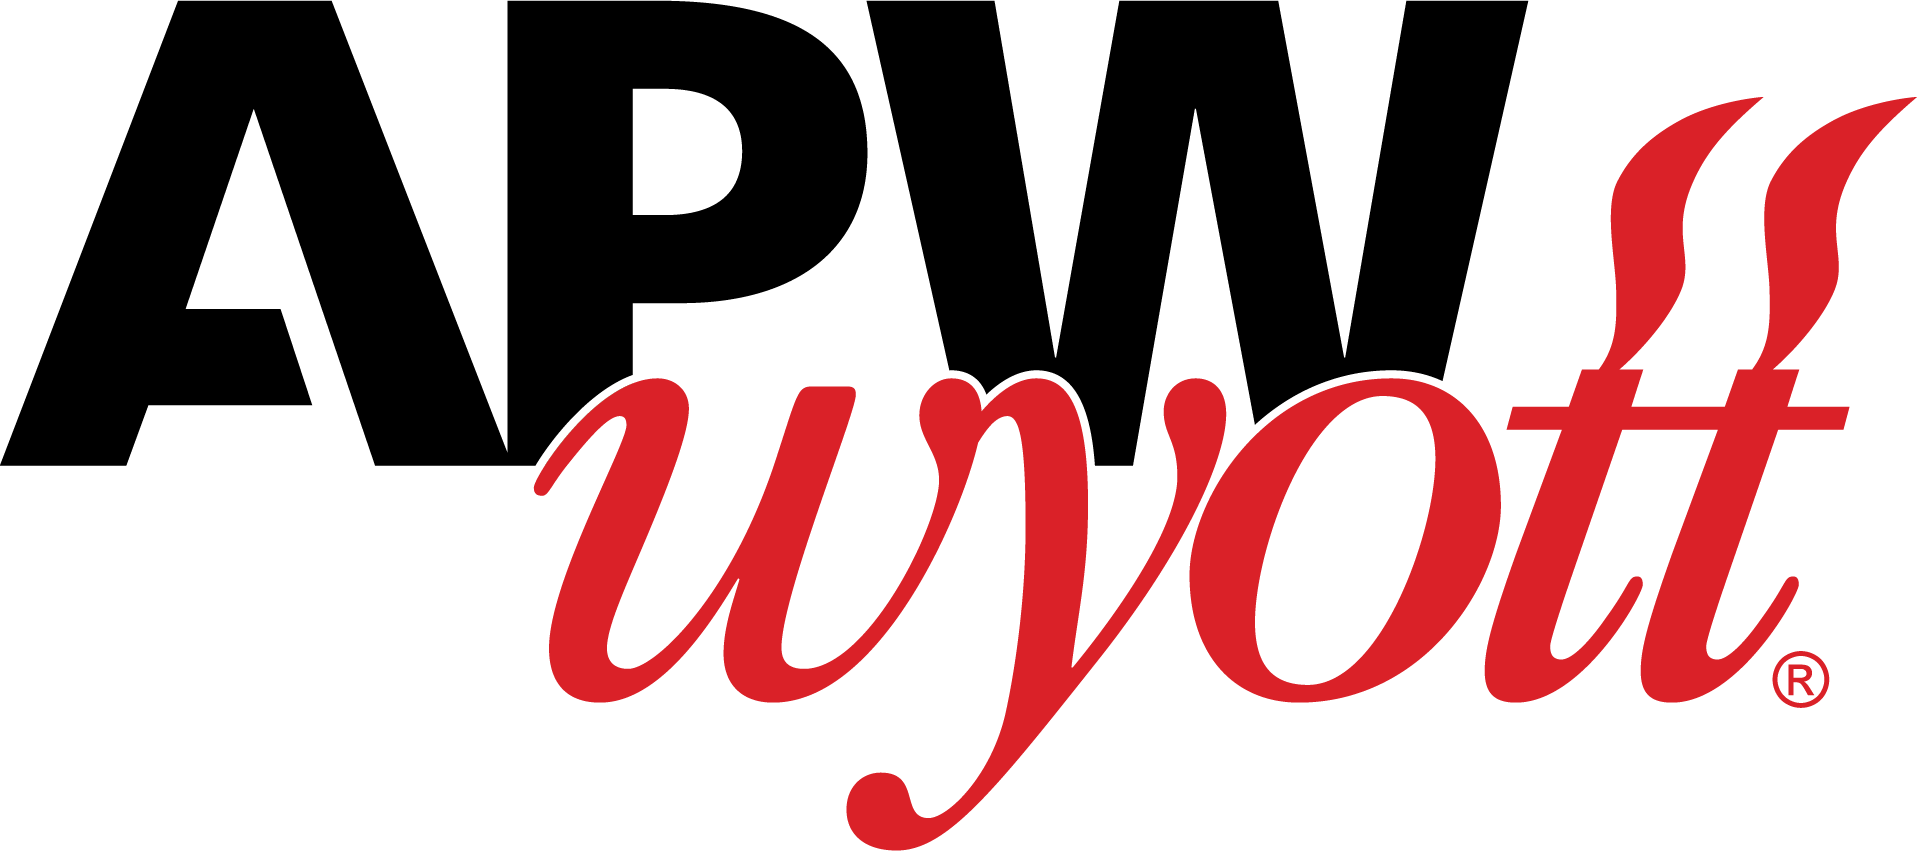 APW-Wyott